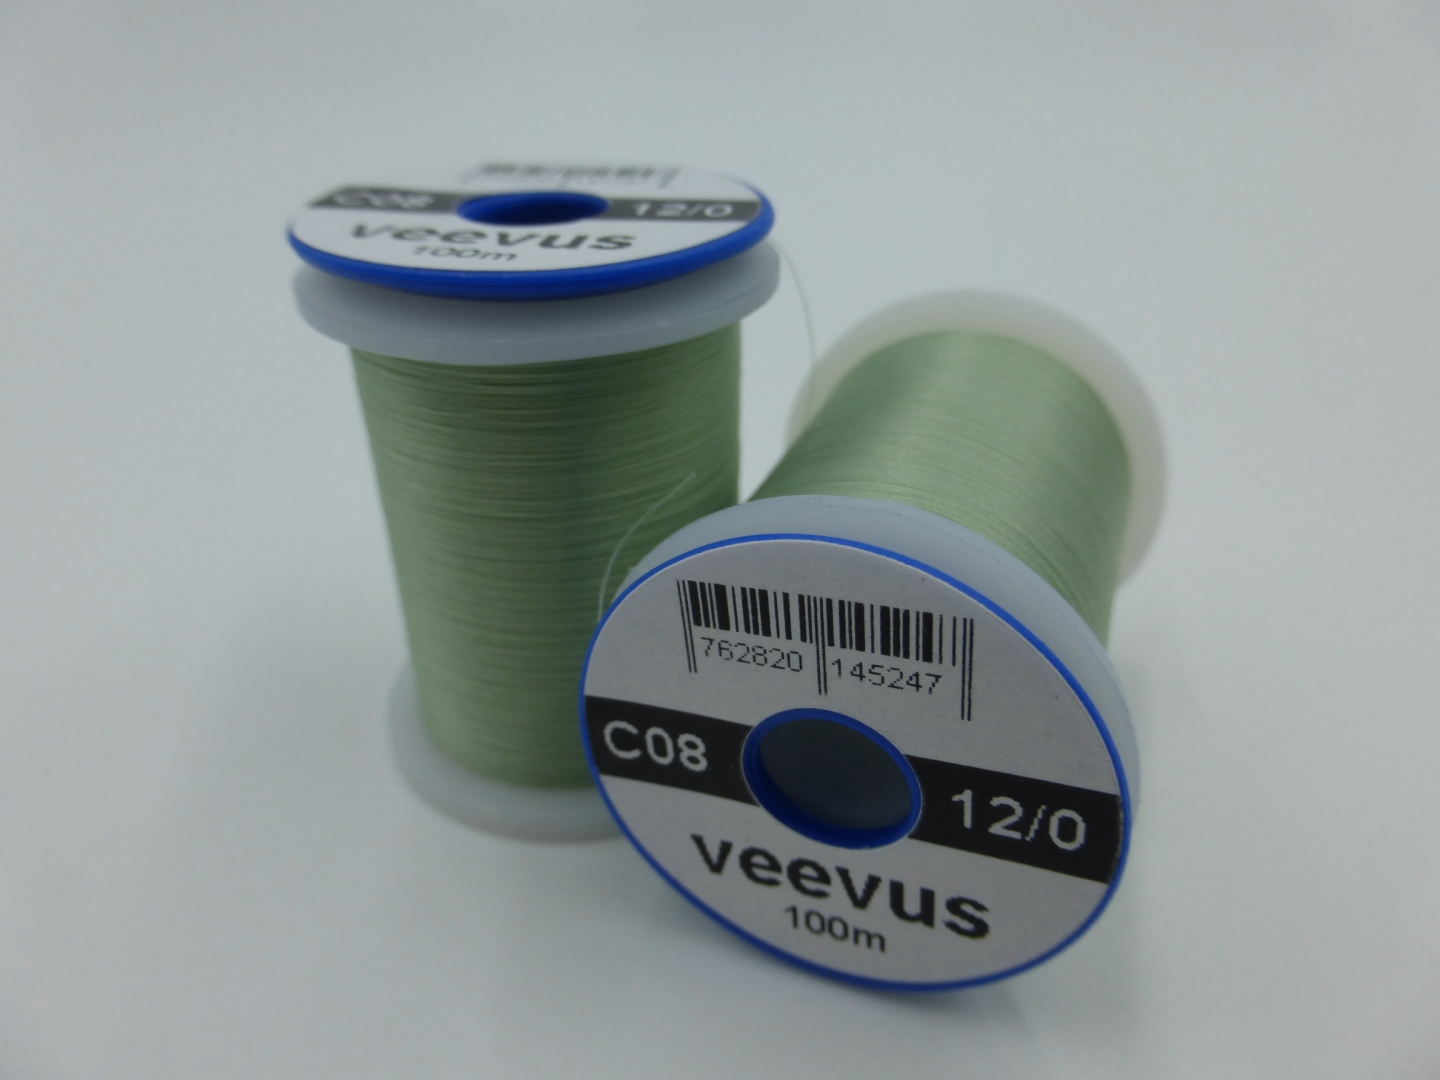 Veevus 12/0 Light Olive C08